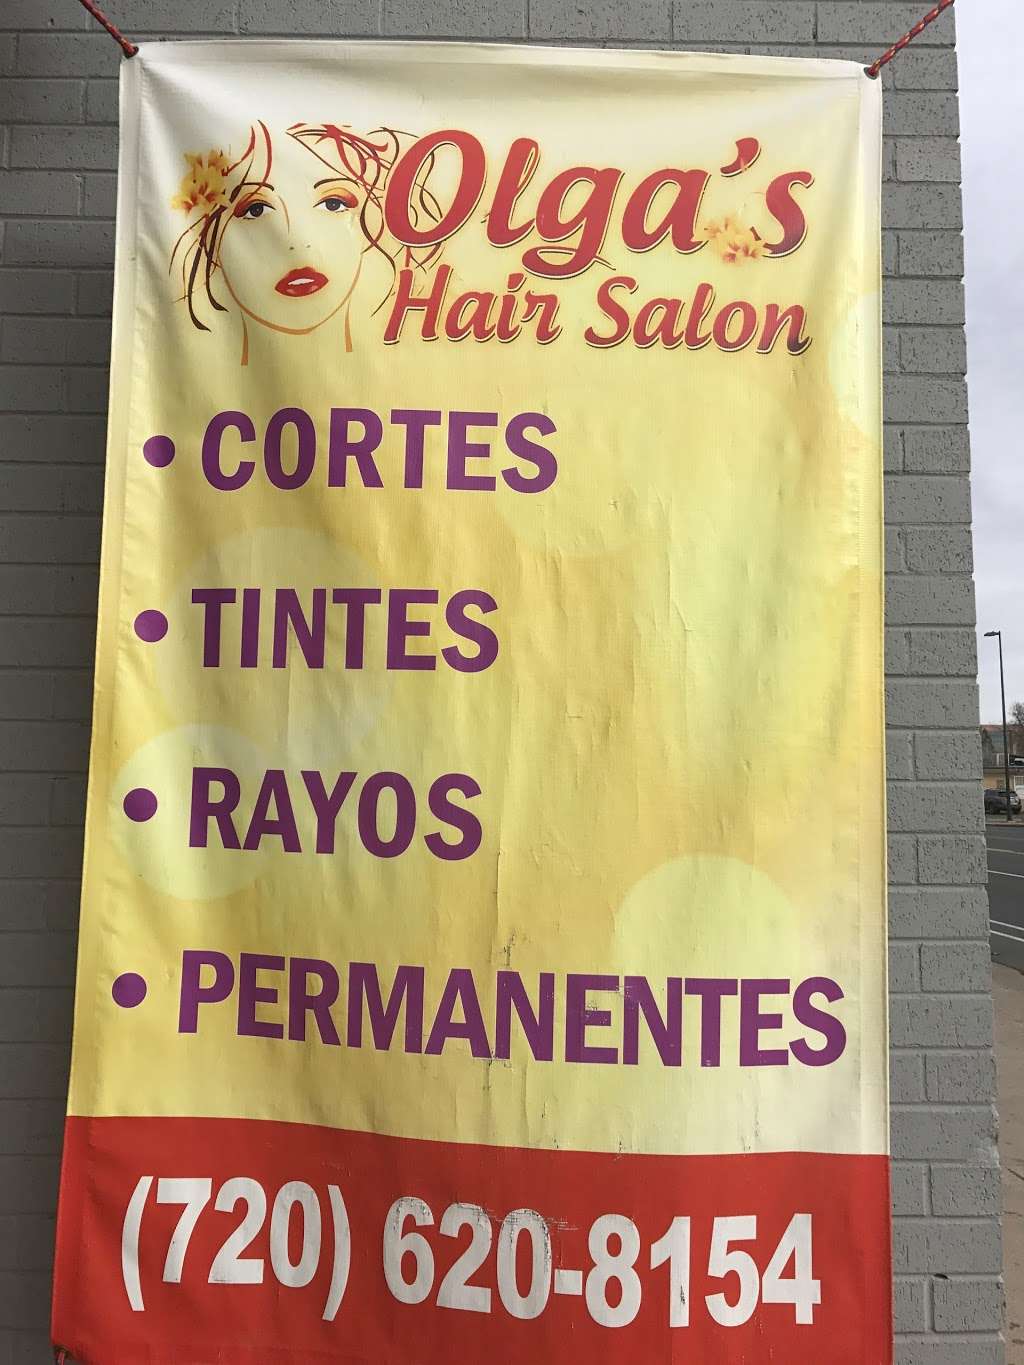 Olgas Hair Salon | 11641 E Montview Blvd, Aurora, CO 80010 | Phone: (720) 620-8154